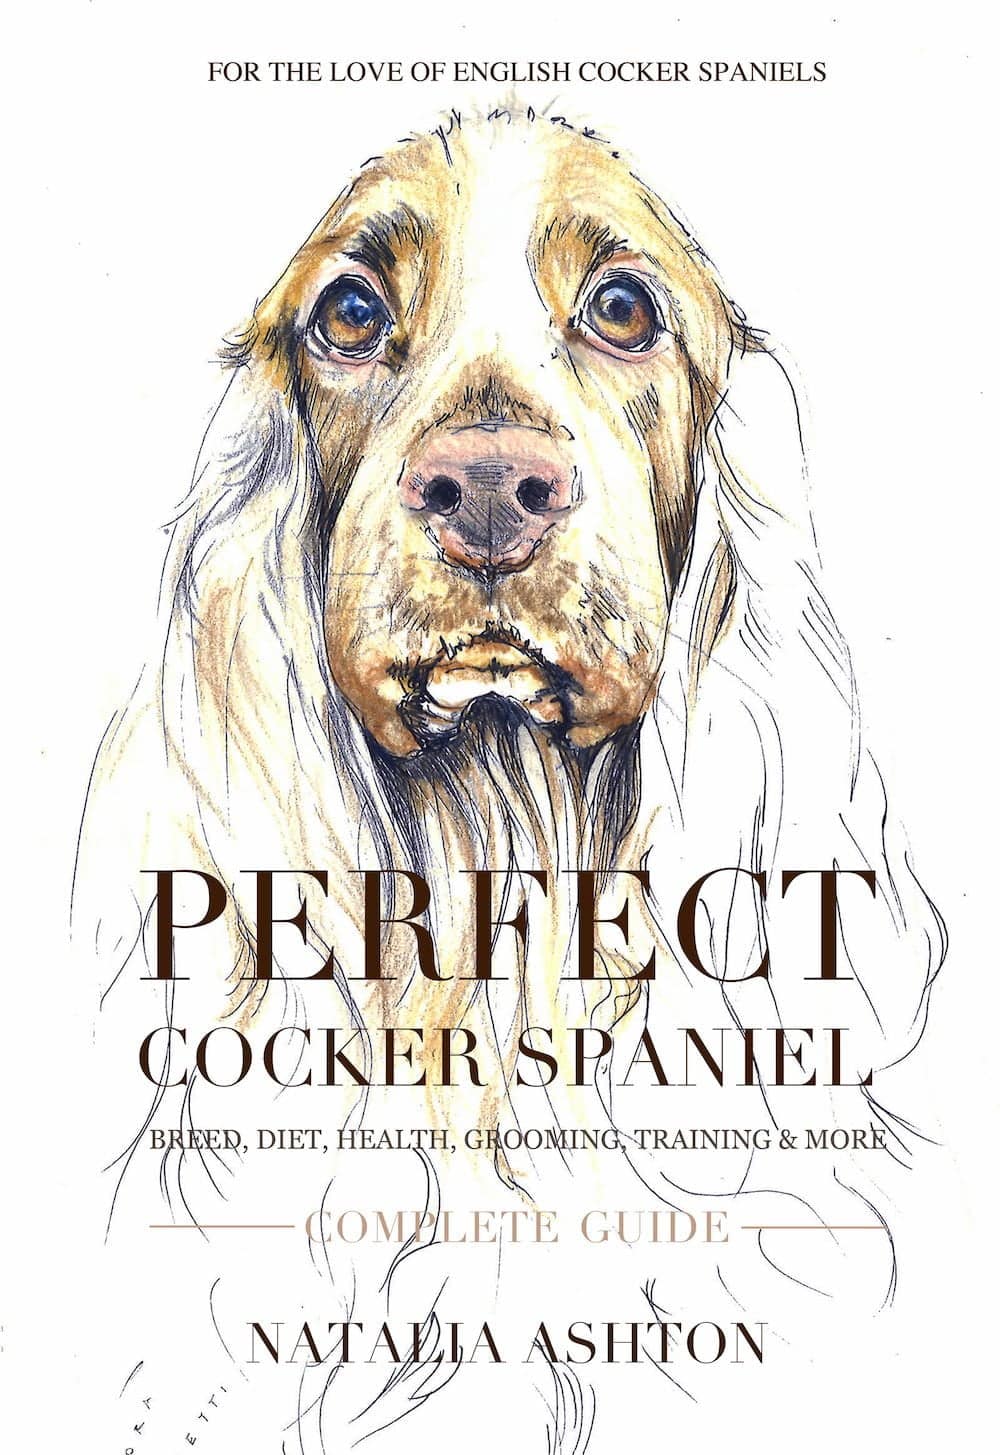 Perfect Cocker Spaniel by Natalia Ashton